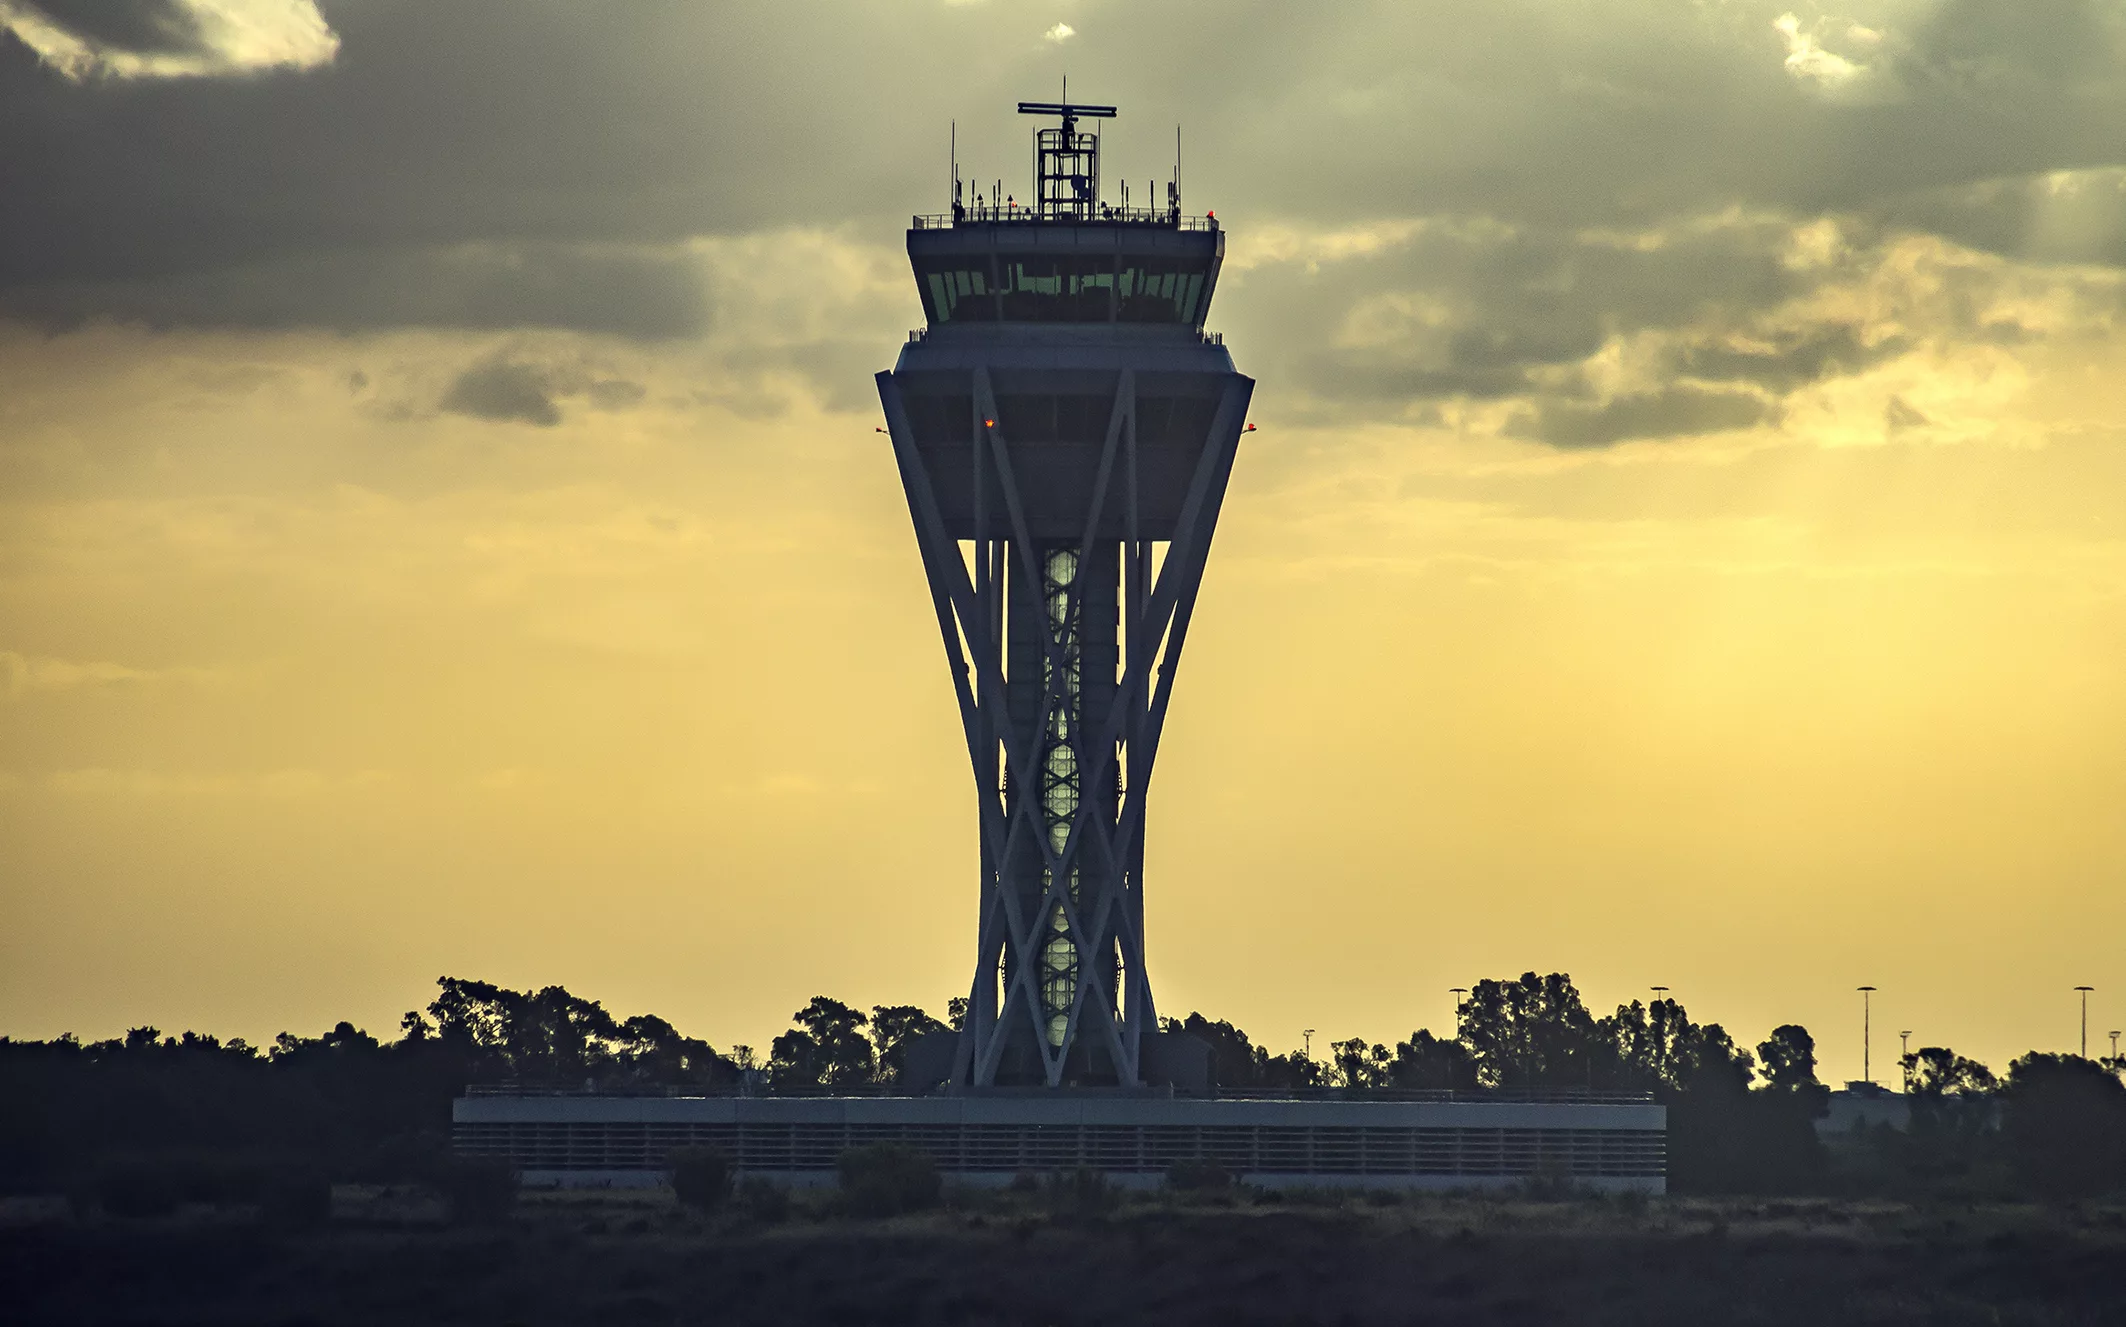 L’Aeroport es consolida com el 7è europeu en passatge i entra al Top 20 de càrrega aèria